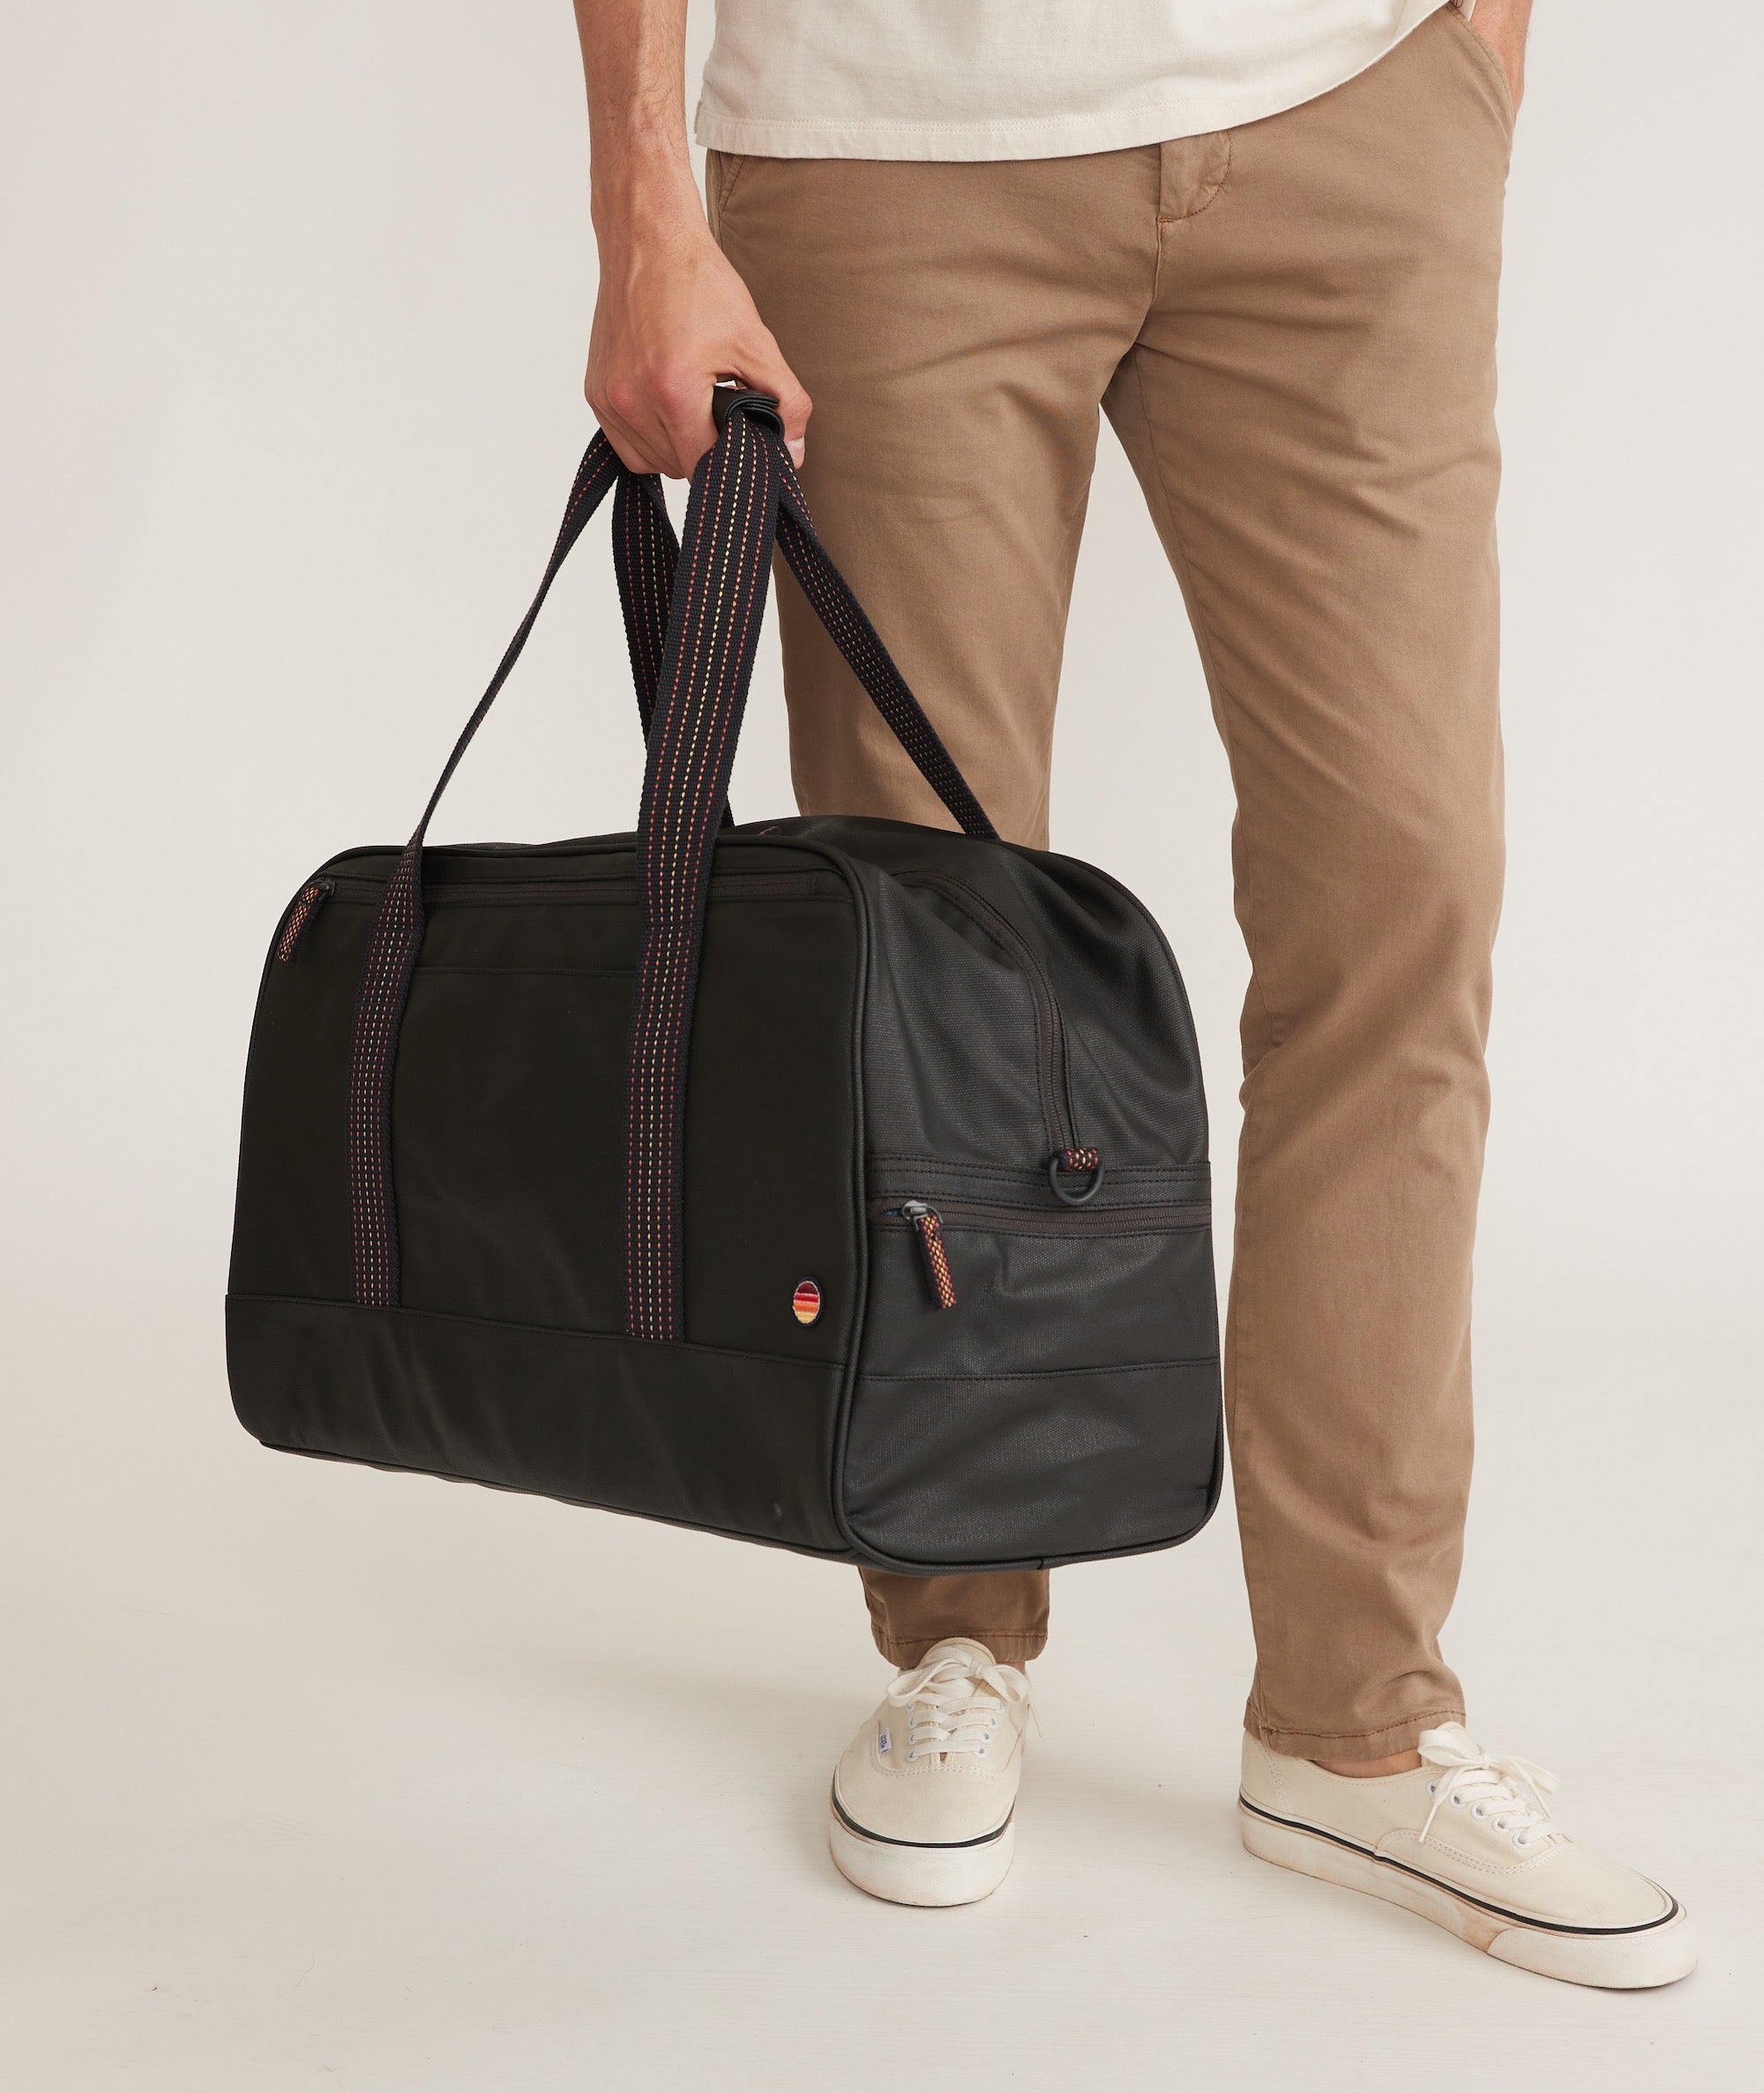 Duffle Bags & Weekender Bags